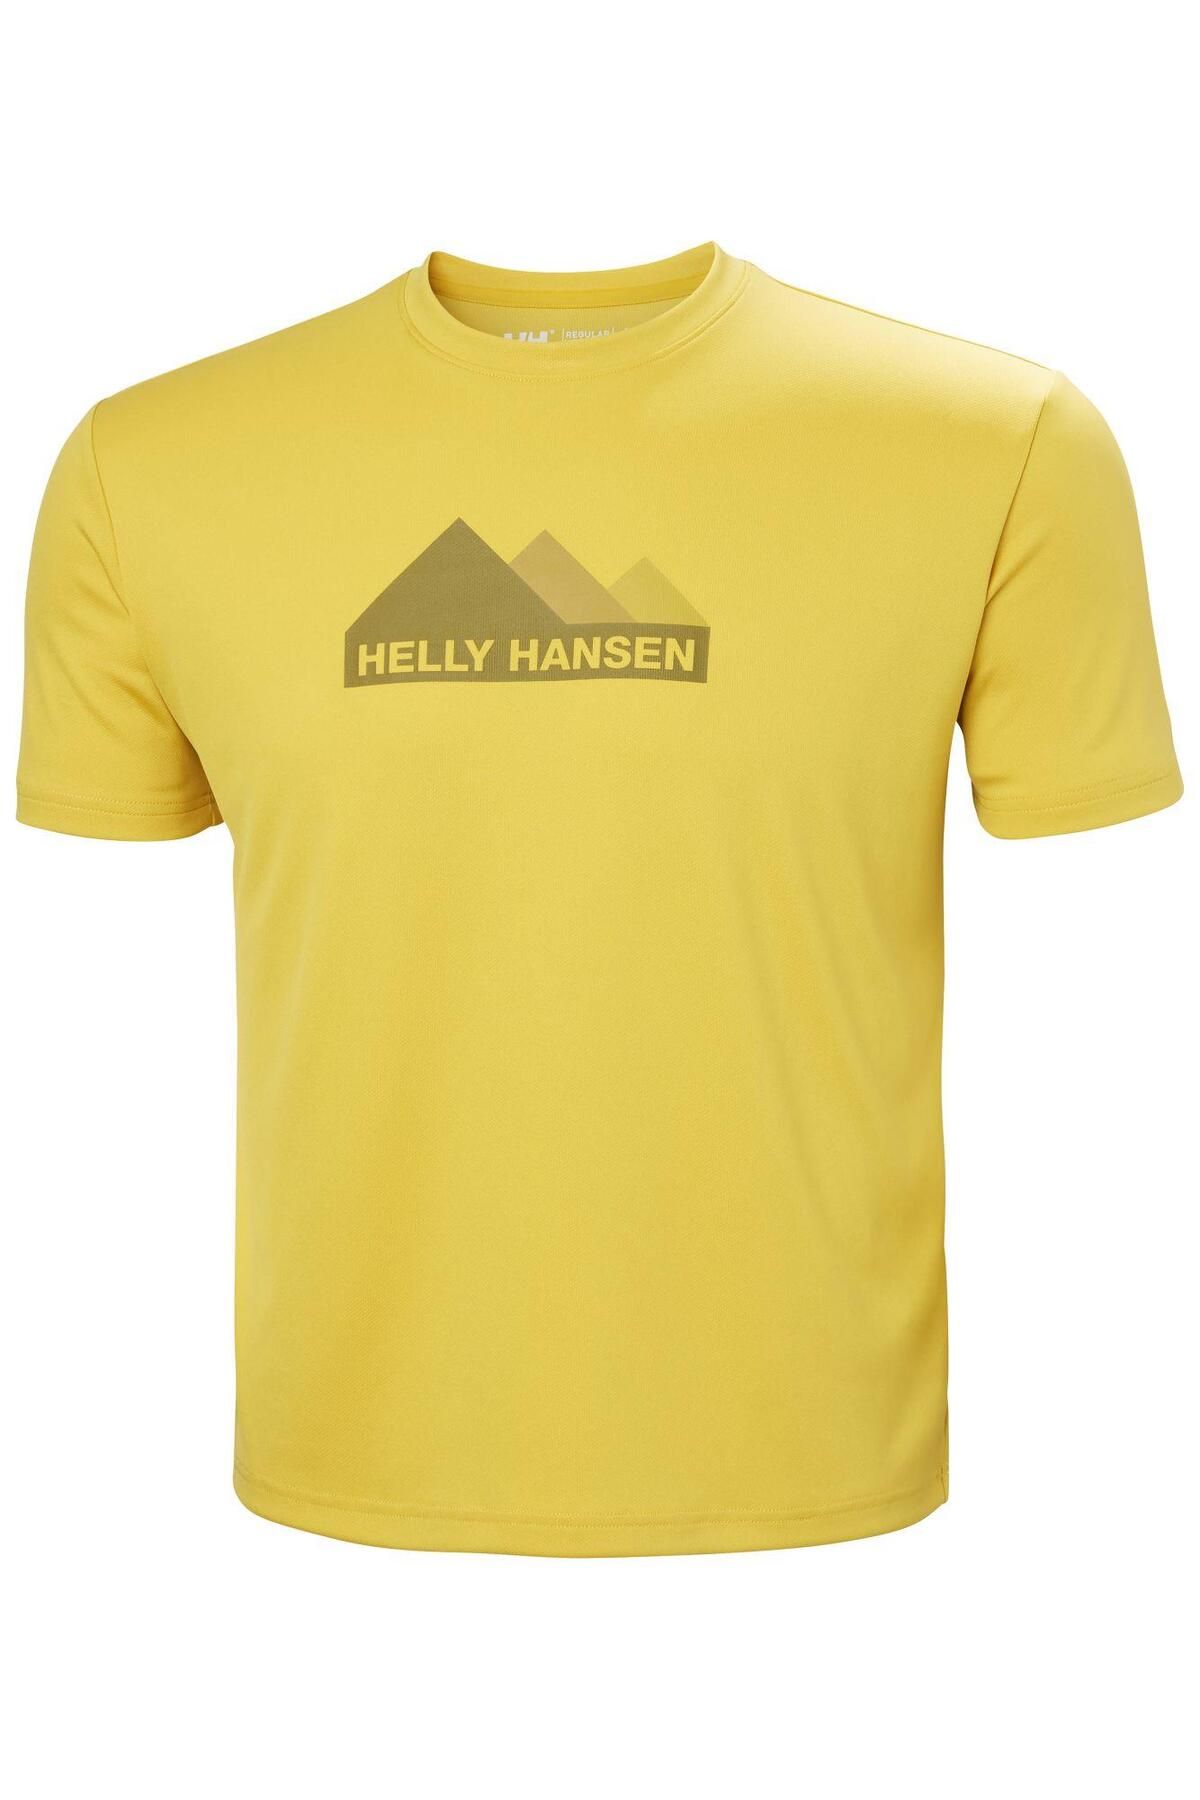 Helly Hansen Helly HansenTECH GRAPHIC Erkek T-SHIRT HHA.63088 HHA.348 Sarı-XL